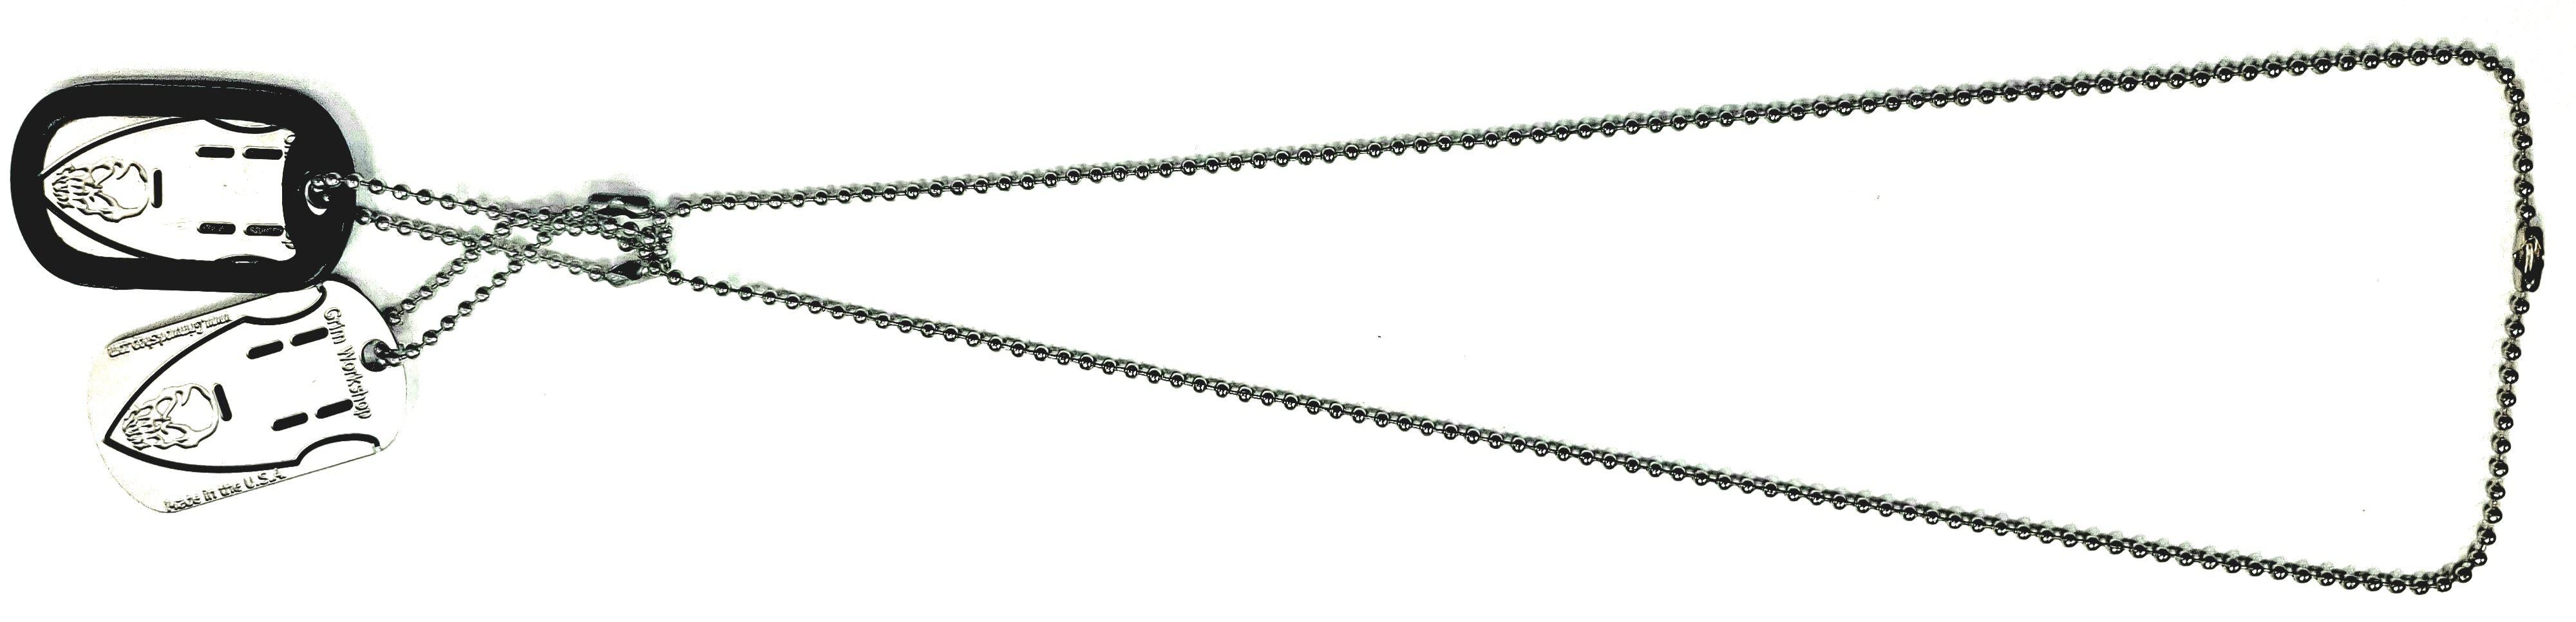 Arrowhead Dog Tag for use as an arrowhead survival necklace wearing an arrowhead necklace for EDC